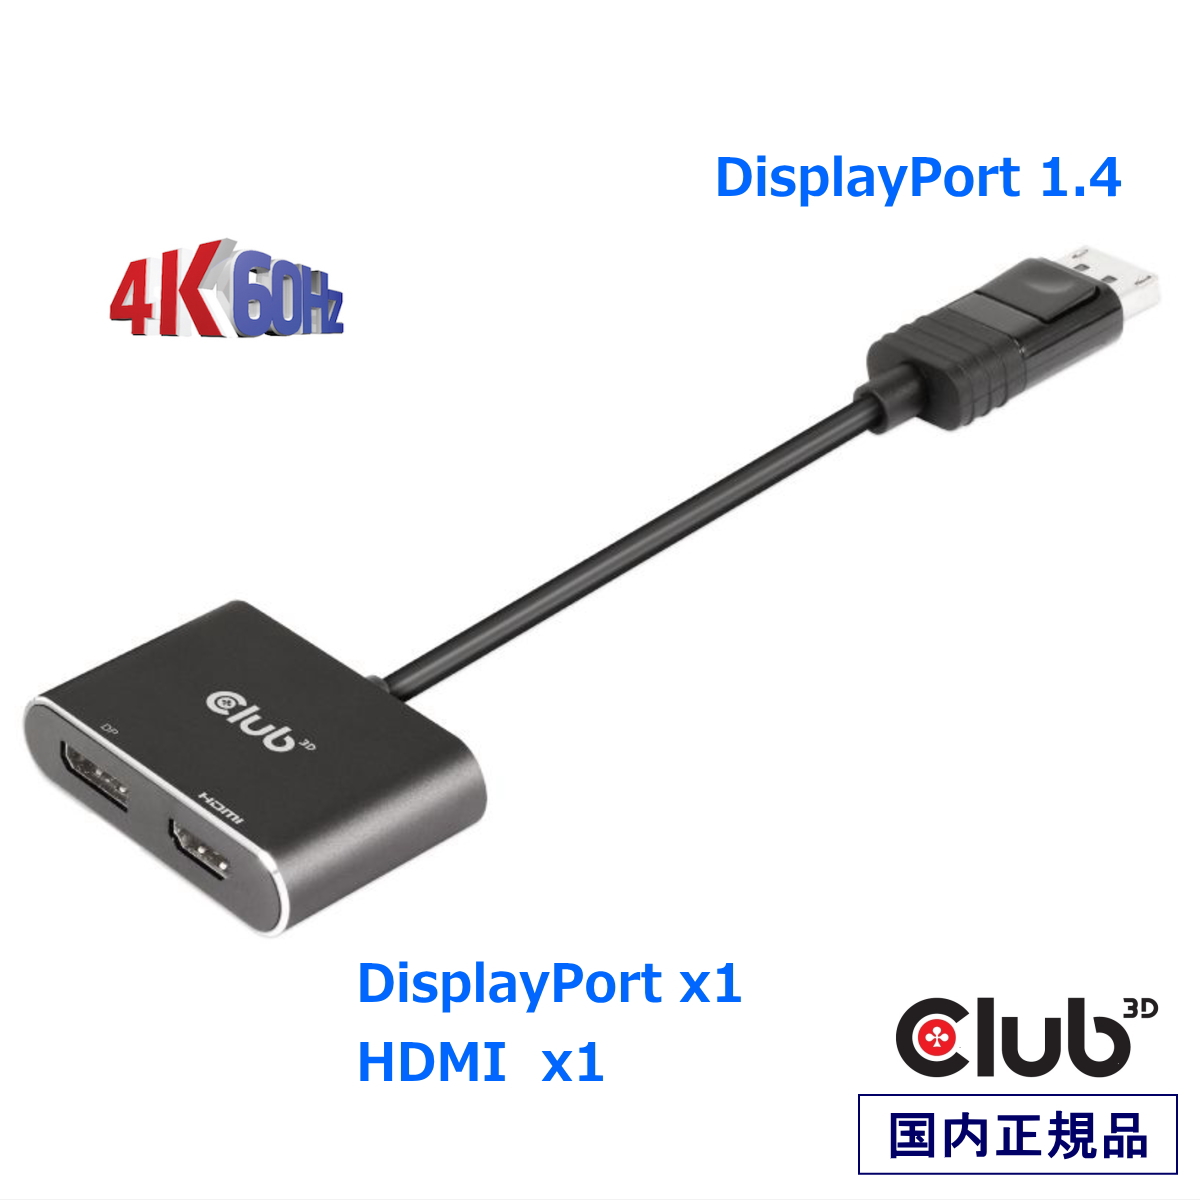 2021年最新入荷 国内正規品 Club 3D MST ハブ DisplayPort 1.4 to + HDMI